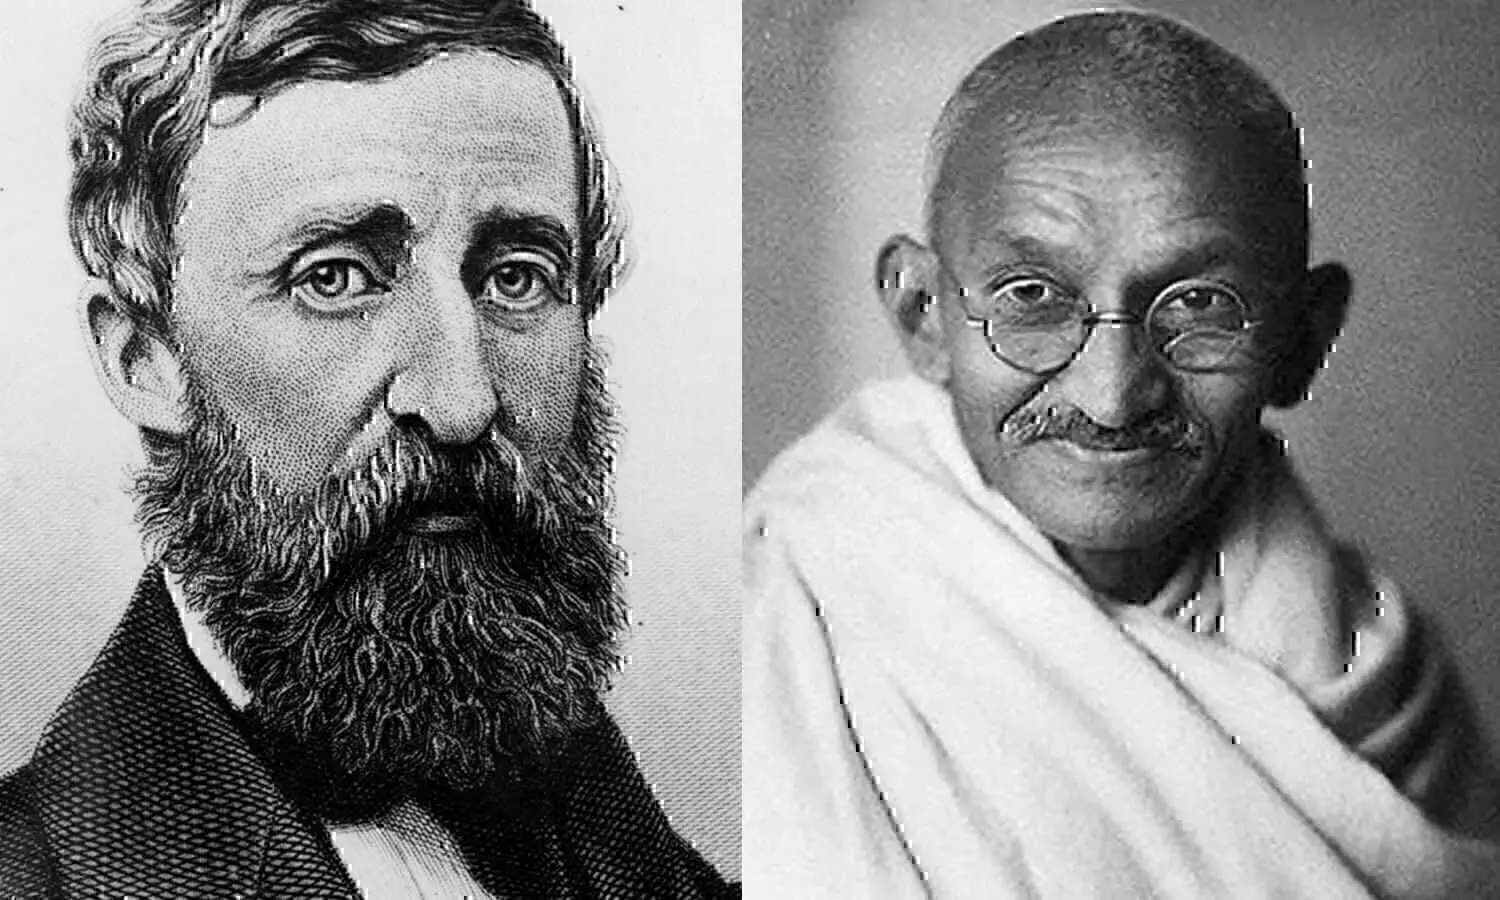 Gandhi Jayanti: गांधी को सविनय अवज्ञा आंदोलन की प्रेरणा मिली थी अमेरिकी दार्शनिक से